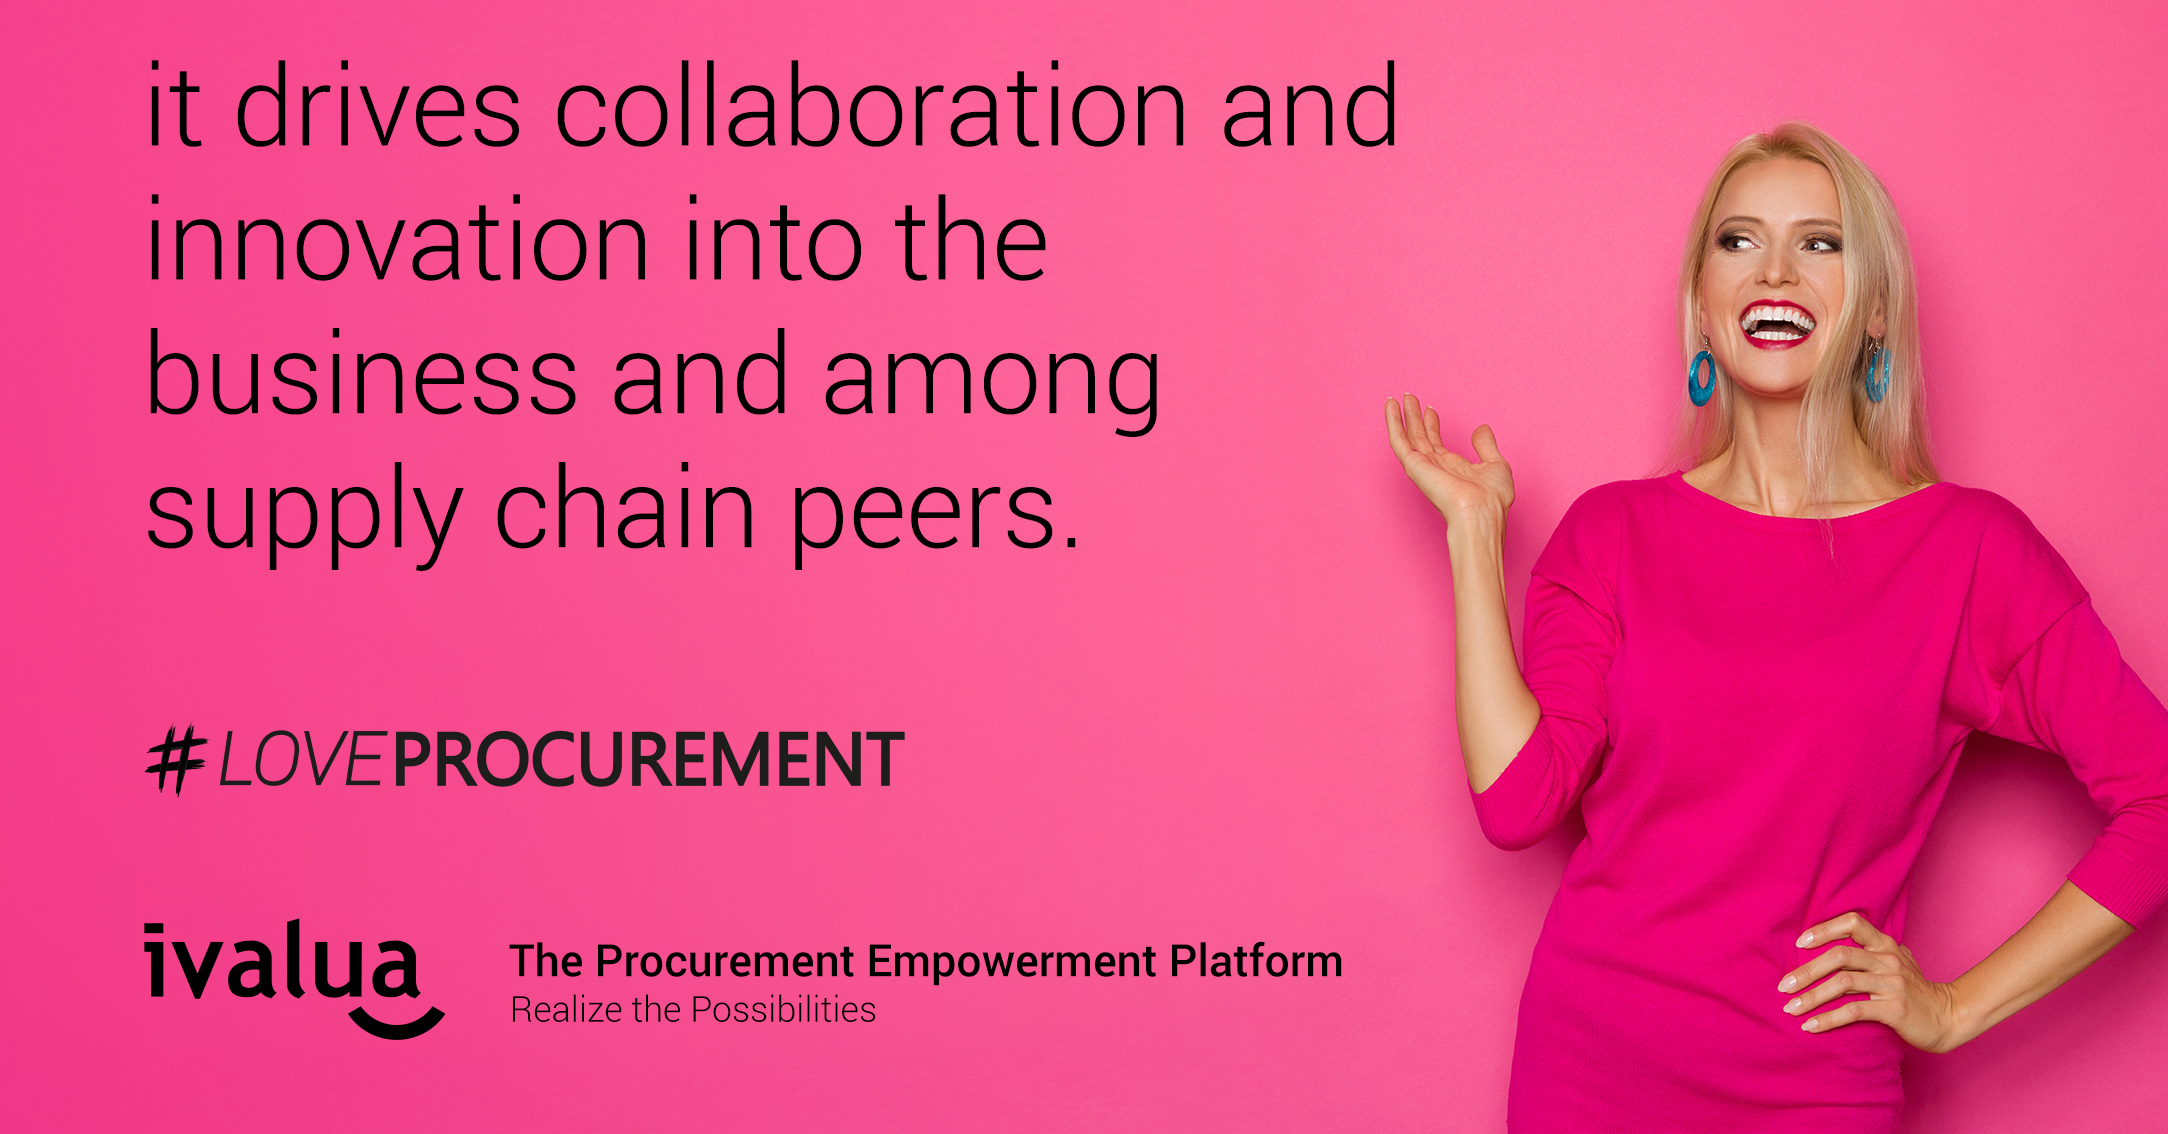 Loveprocurement - Drives Collaboration